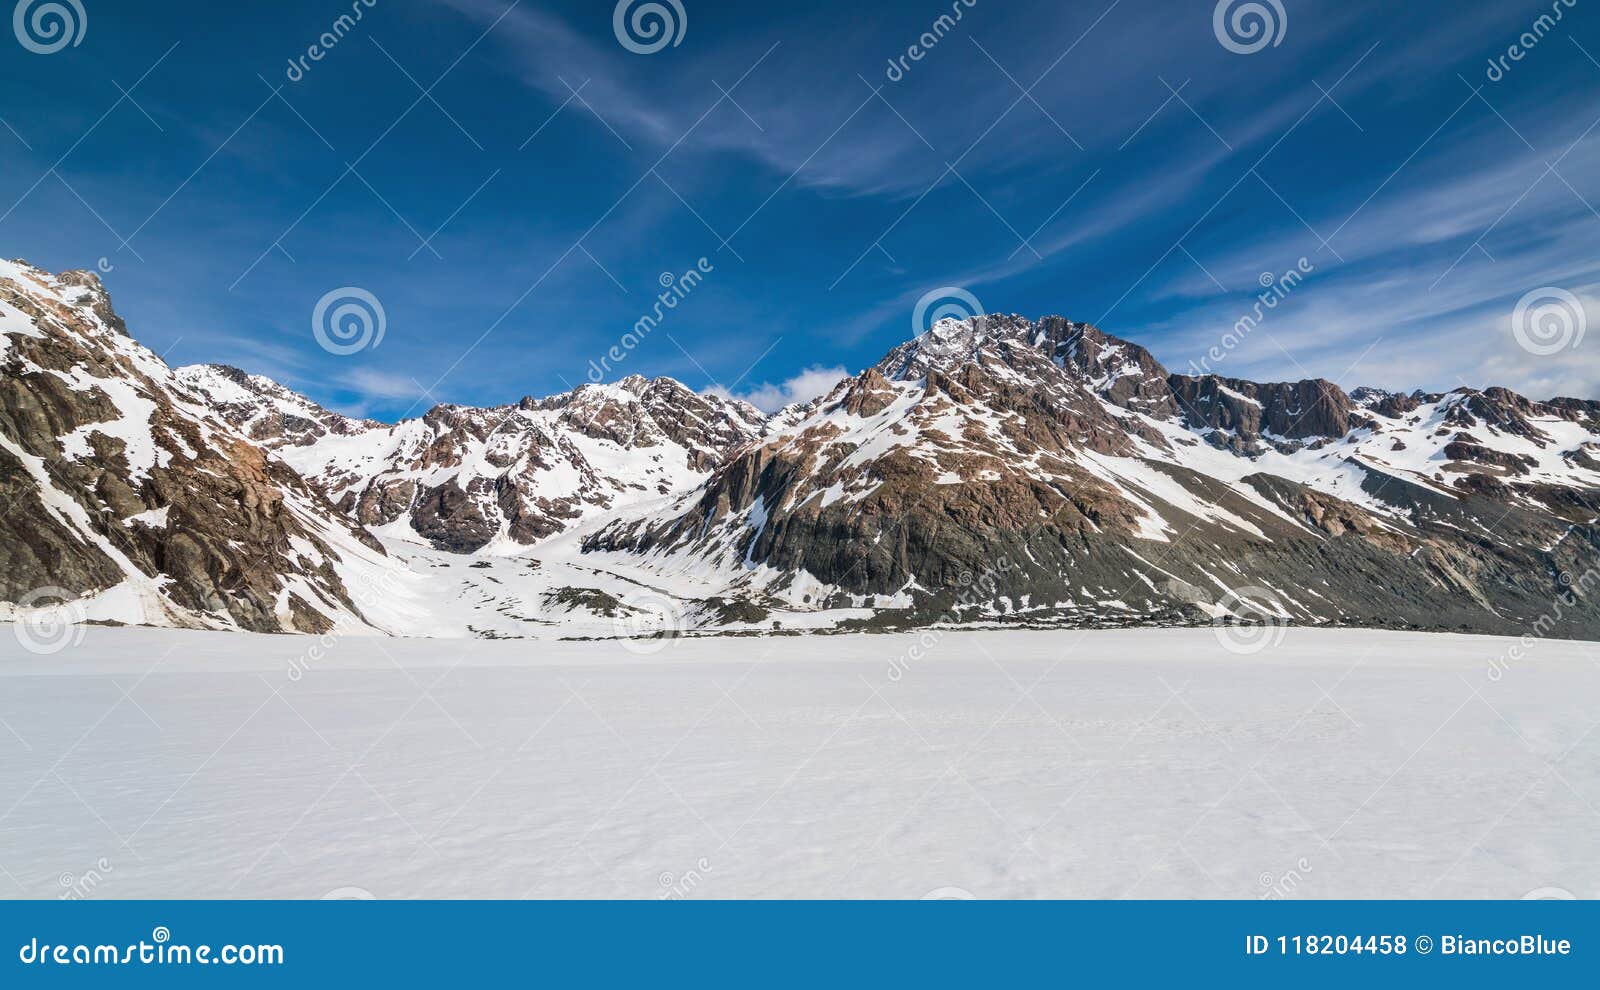 雪山背景冬天风景库存照片 图片包括有雪山背景冬天风景